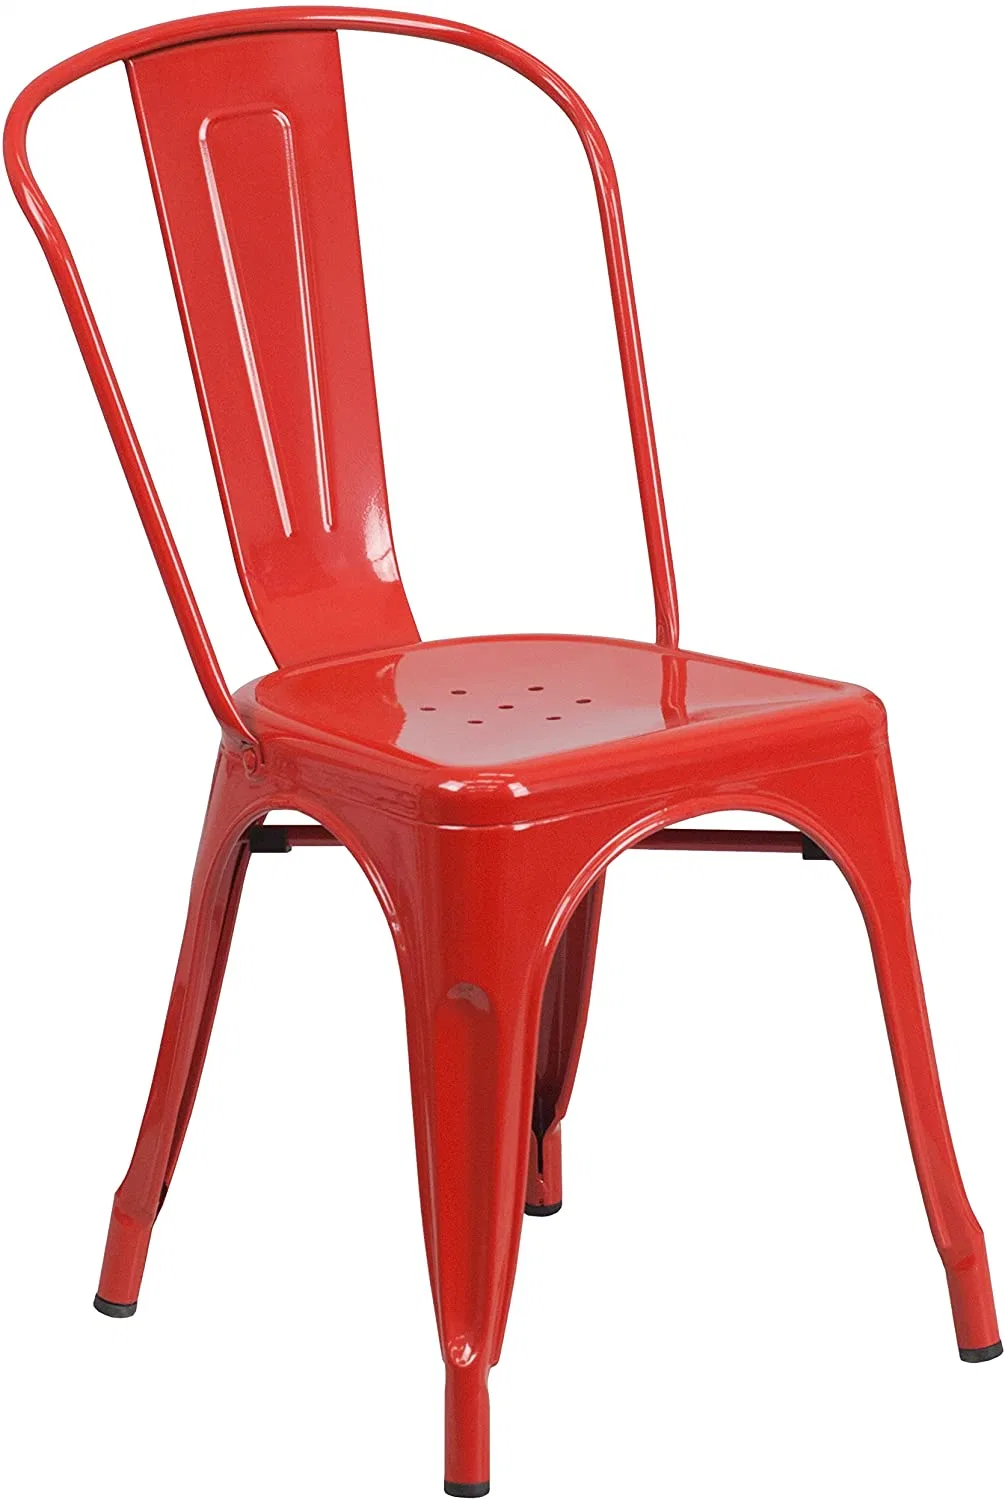 Qualidade comercial Indoor-Outdoor Metal Amarelo Cadeira empilhável Cadeira Tolix Cadeira de refeições industriais